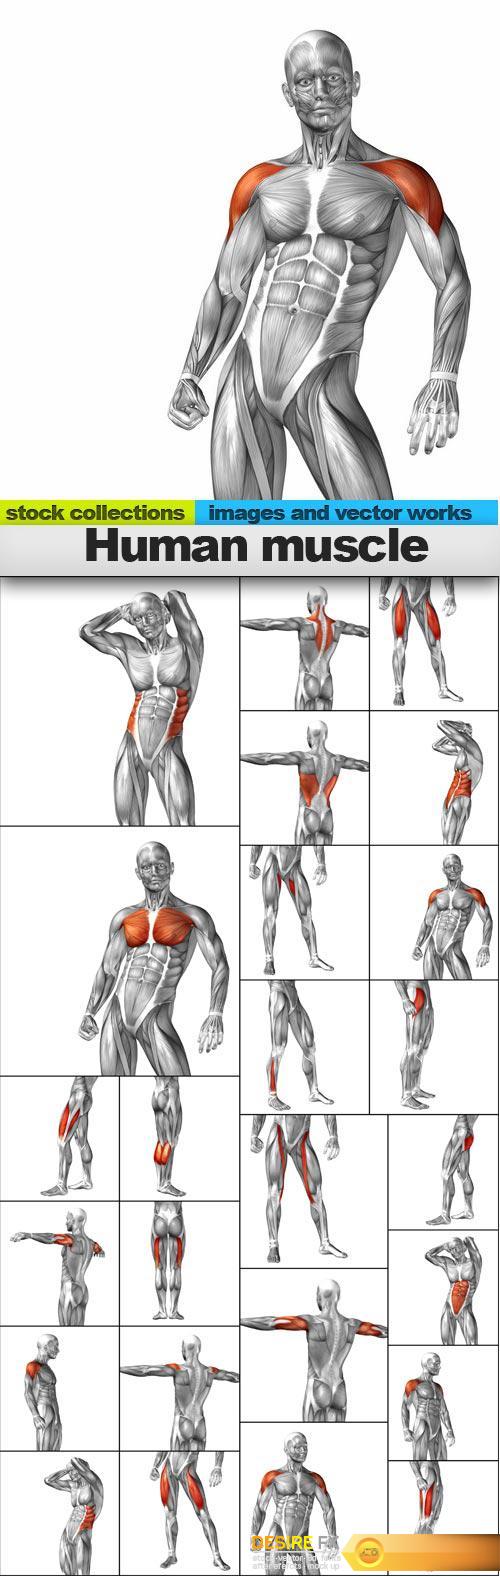 Human muscle, 25 x UHQ JPEG